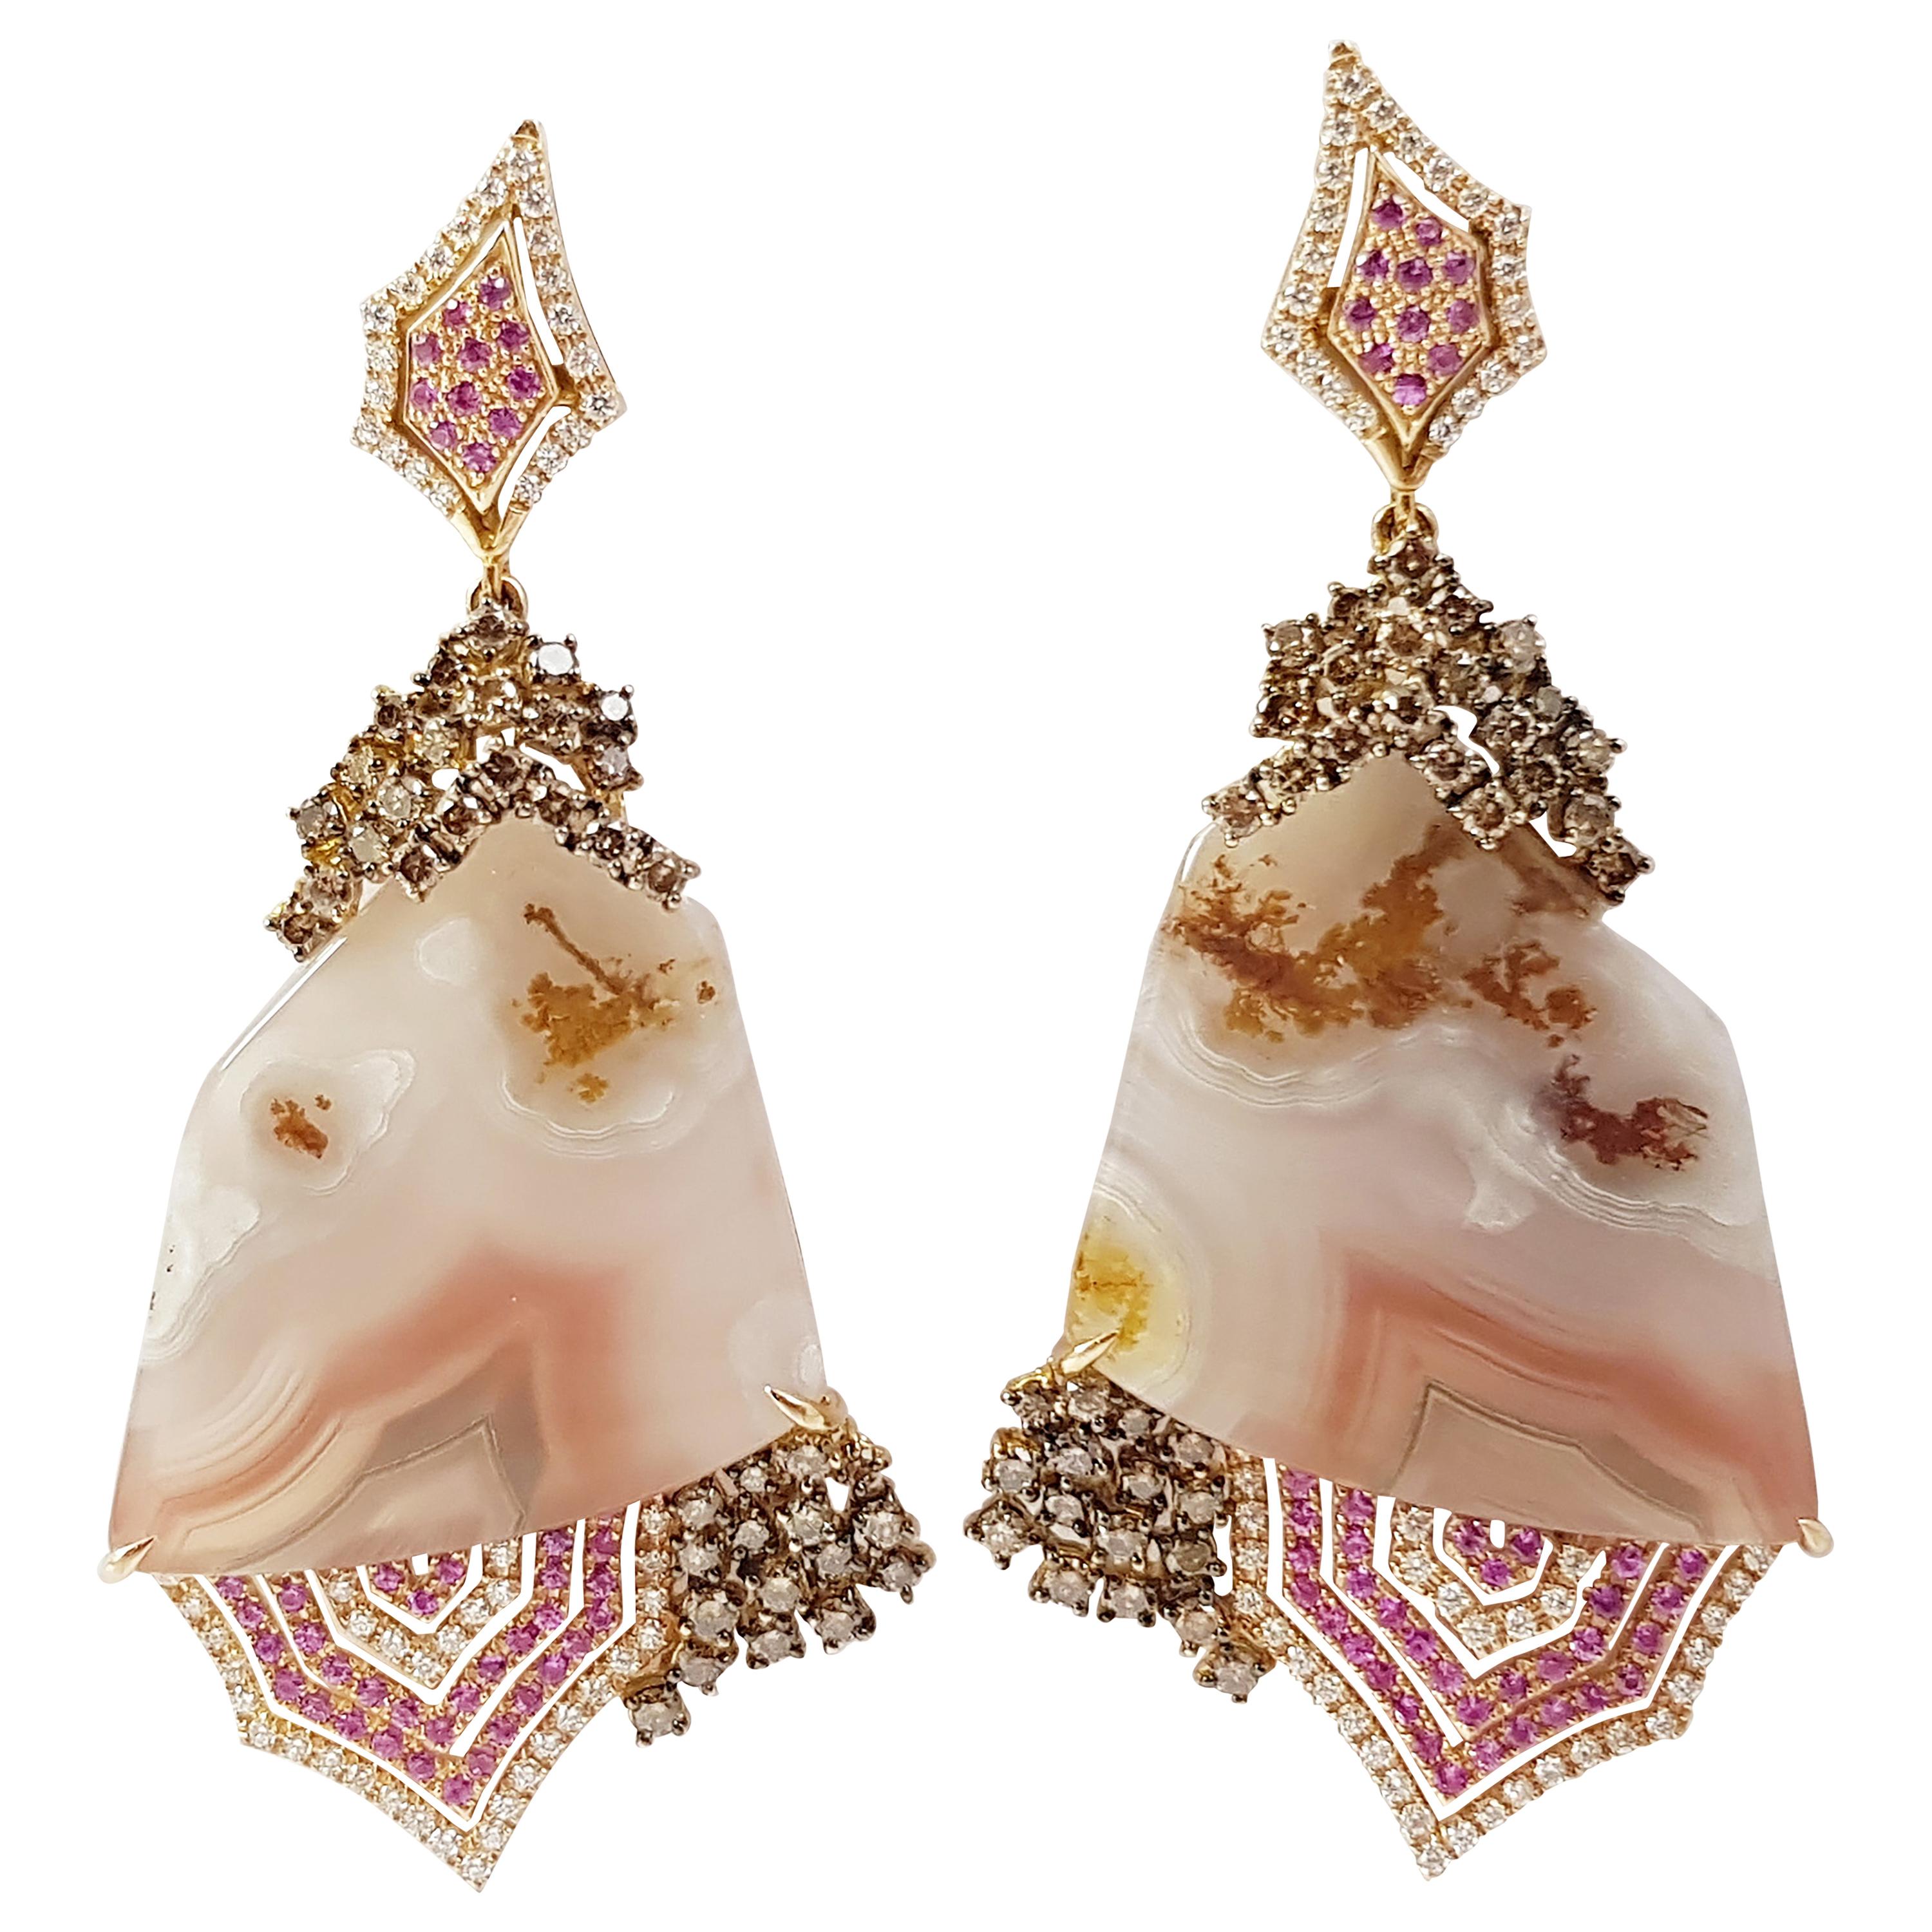 Boucles d'oreilles organiques en or 18 carats, quartz, saphir rose et diamant brun